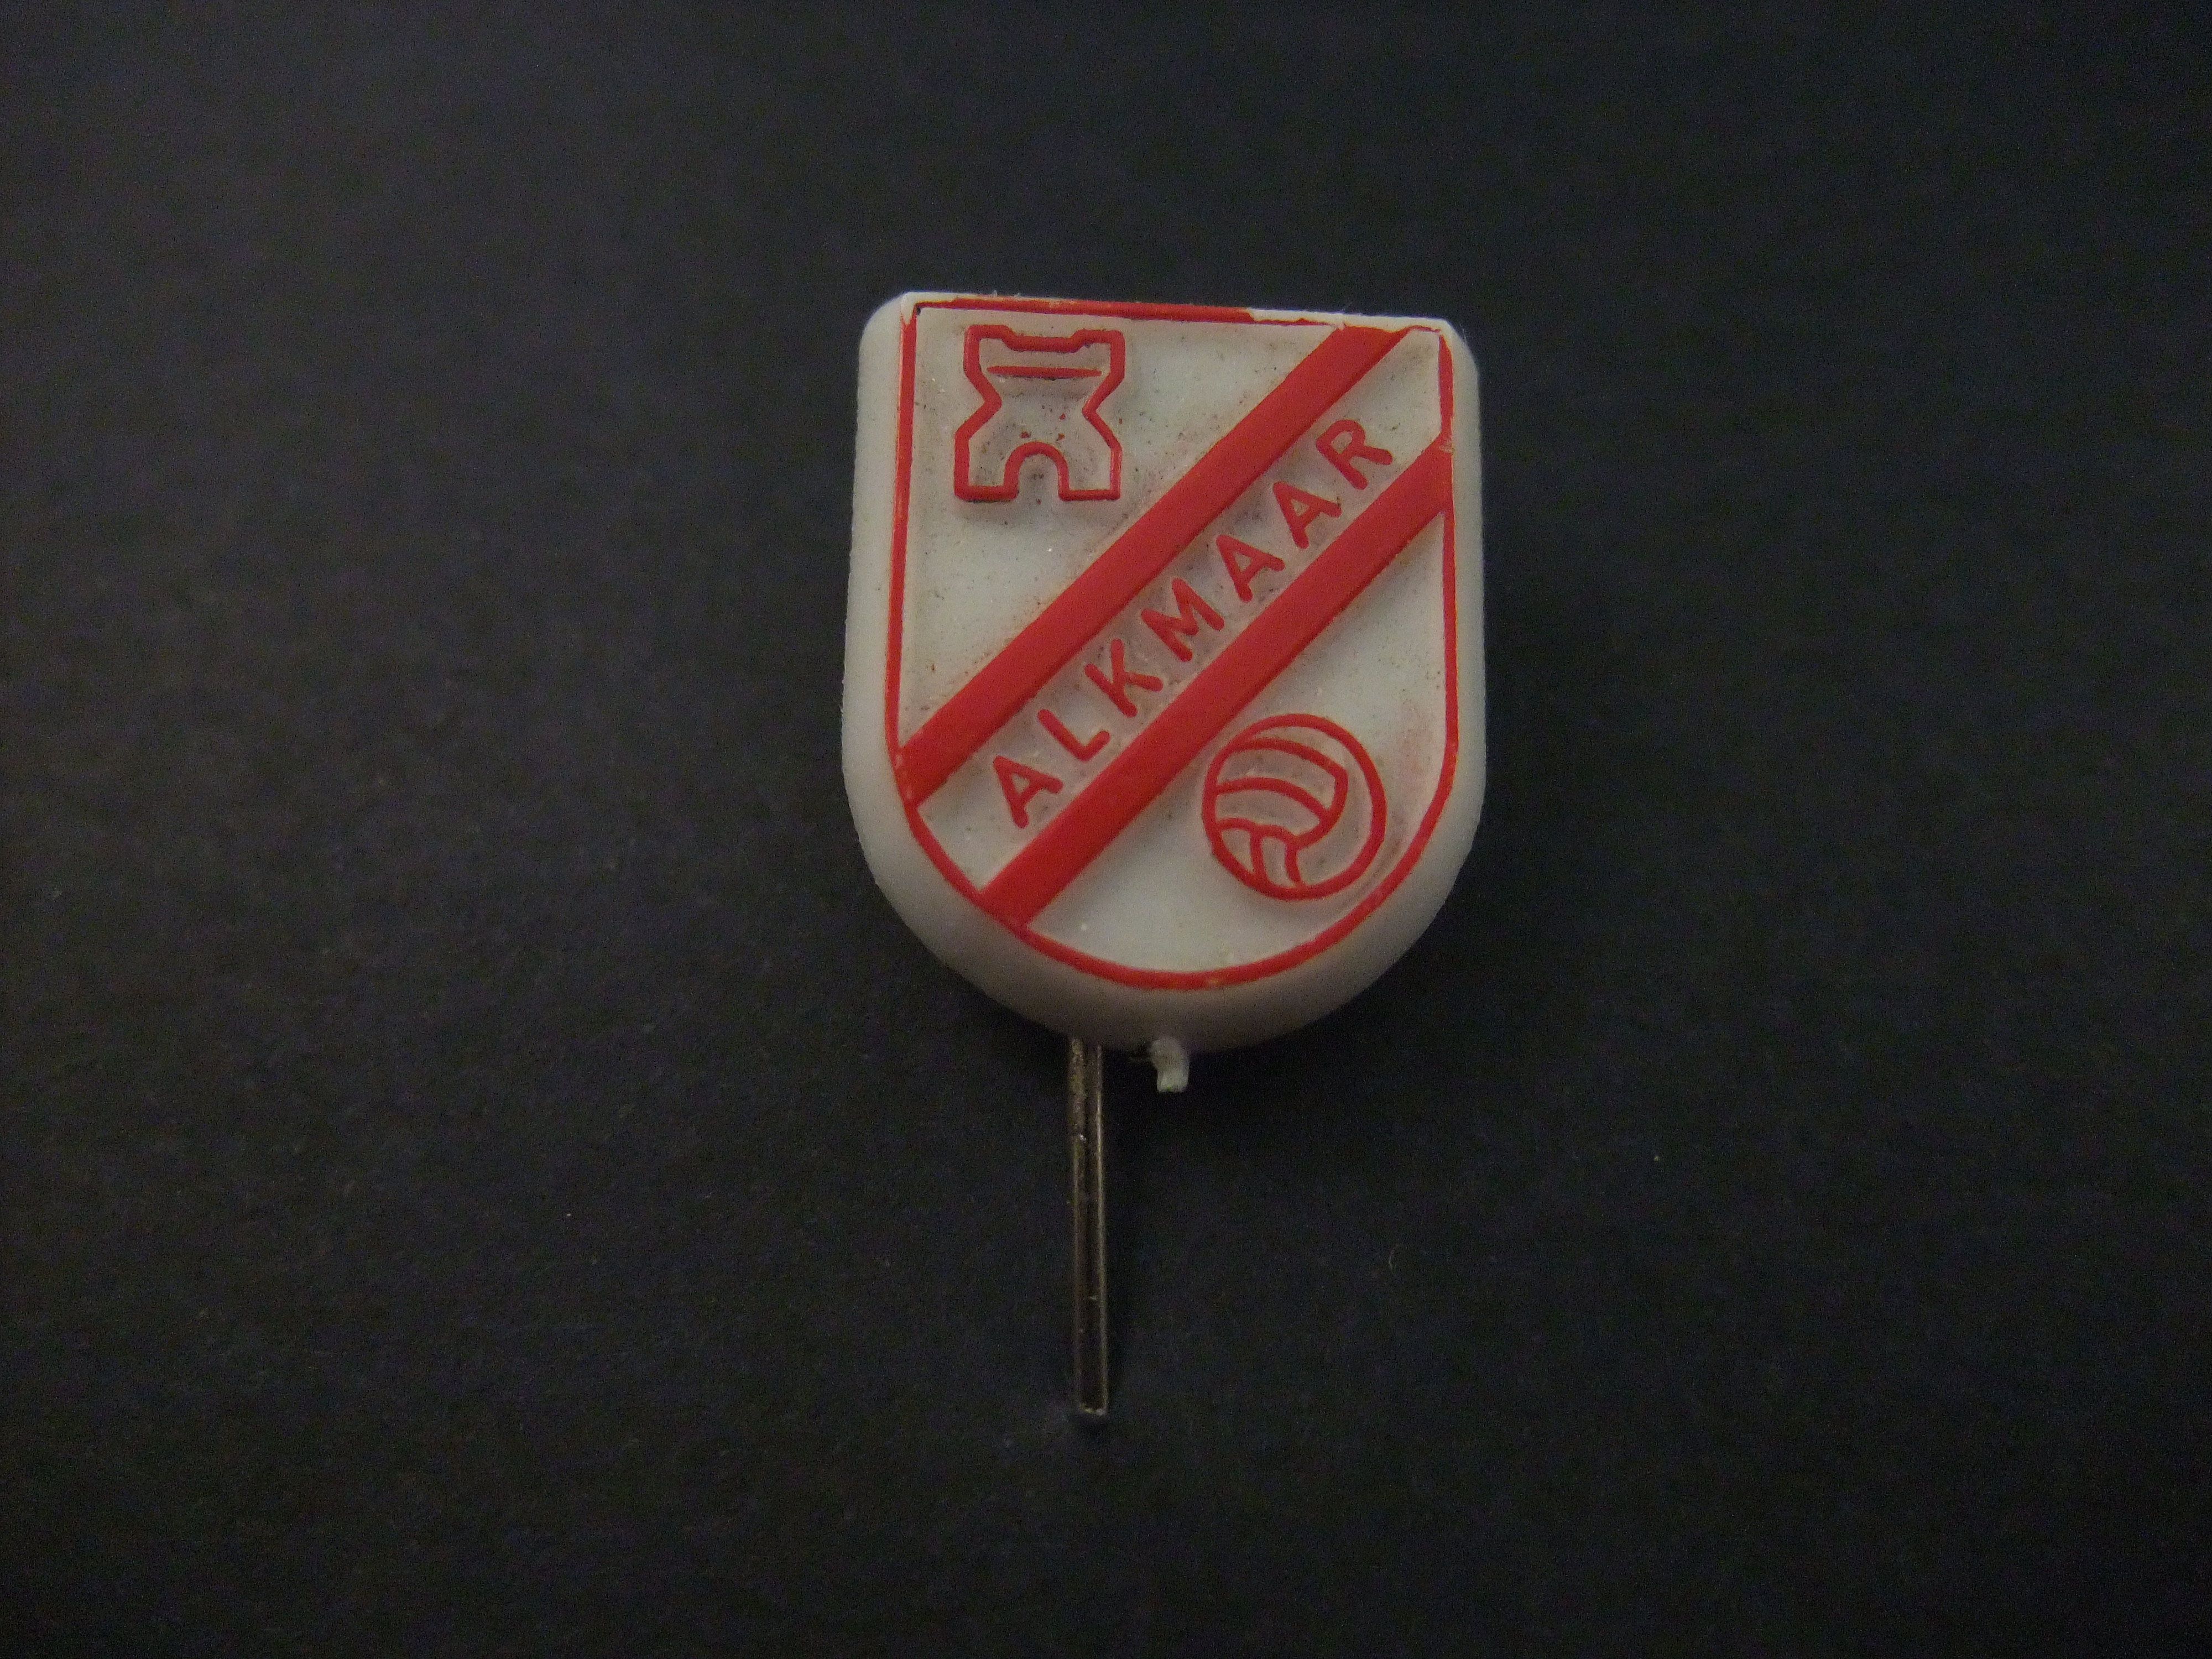 AZ '67 voetbalclub Alkmaar oud logo